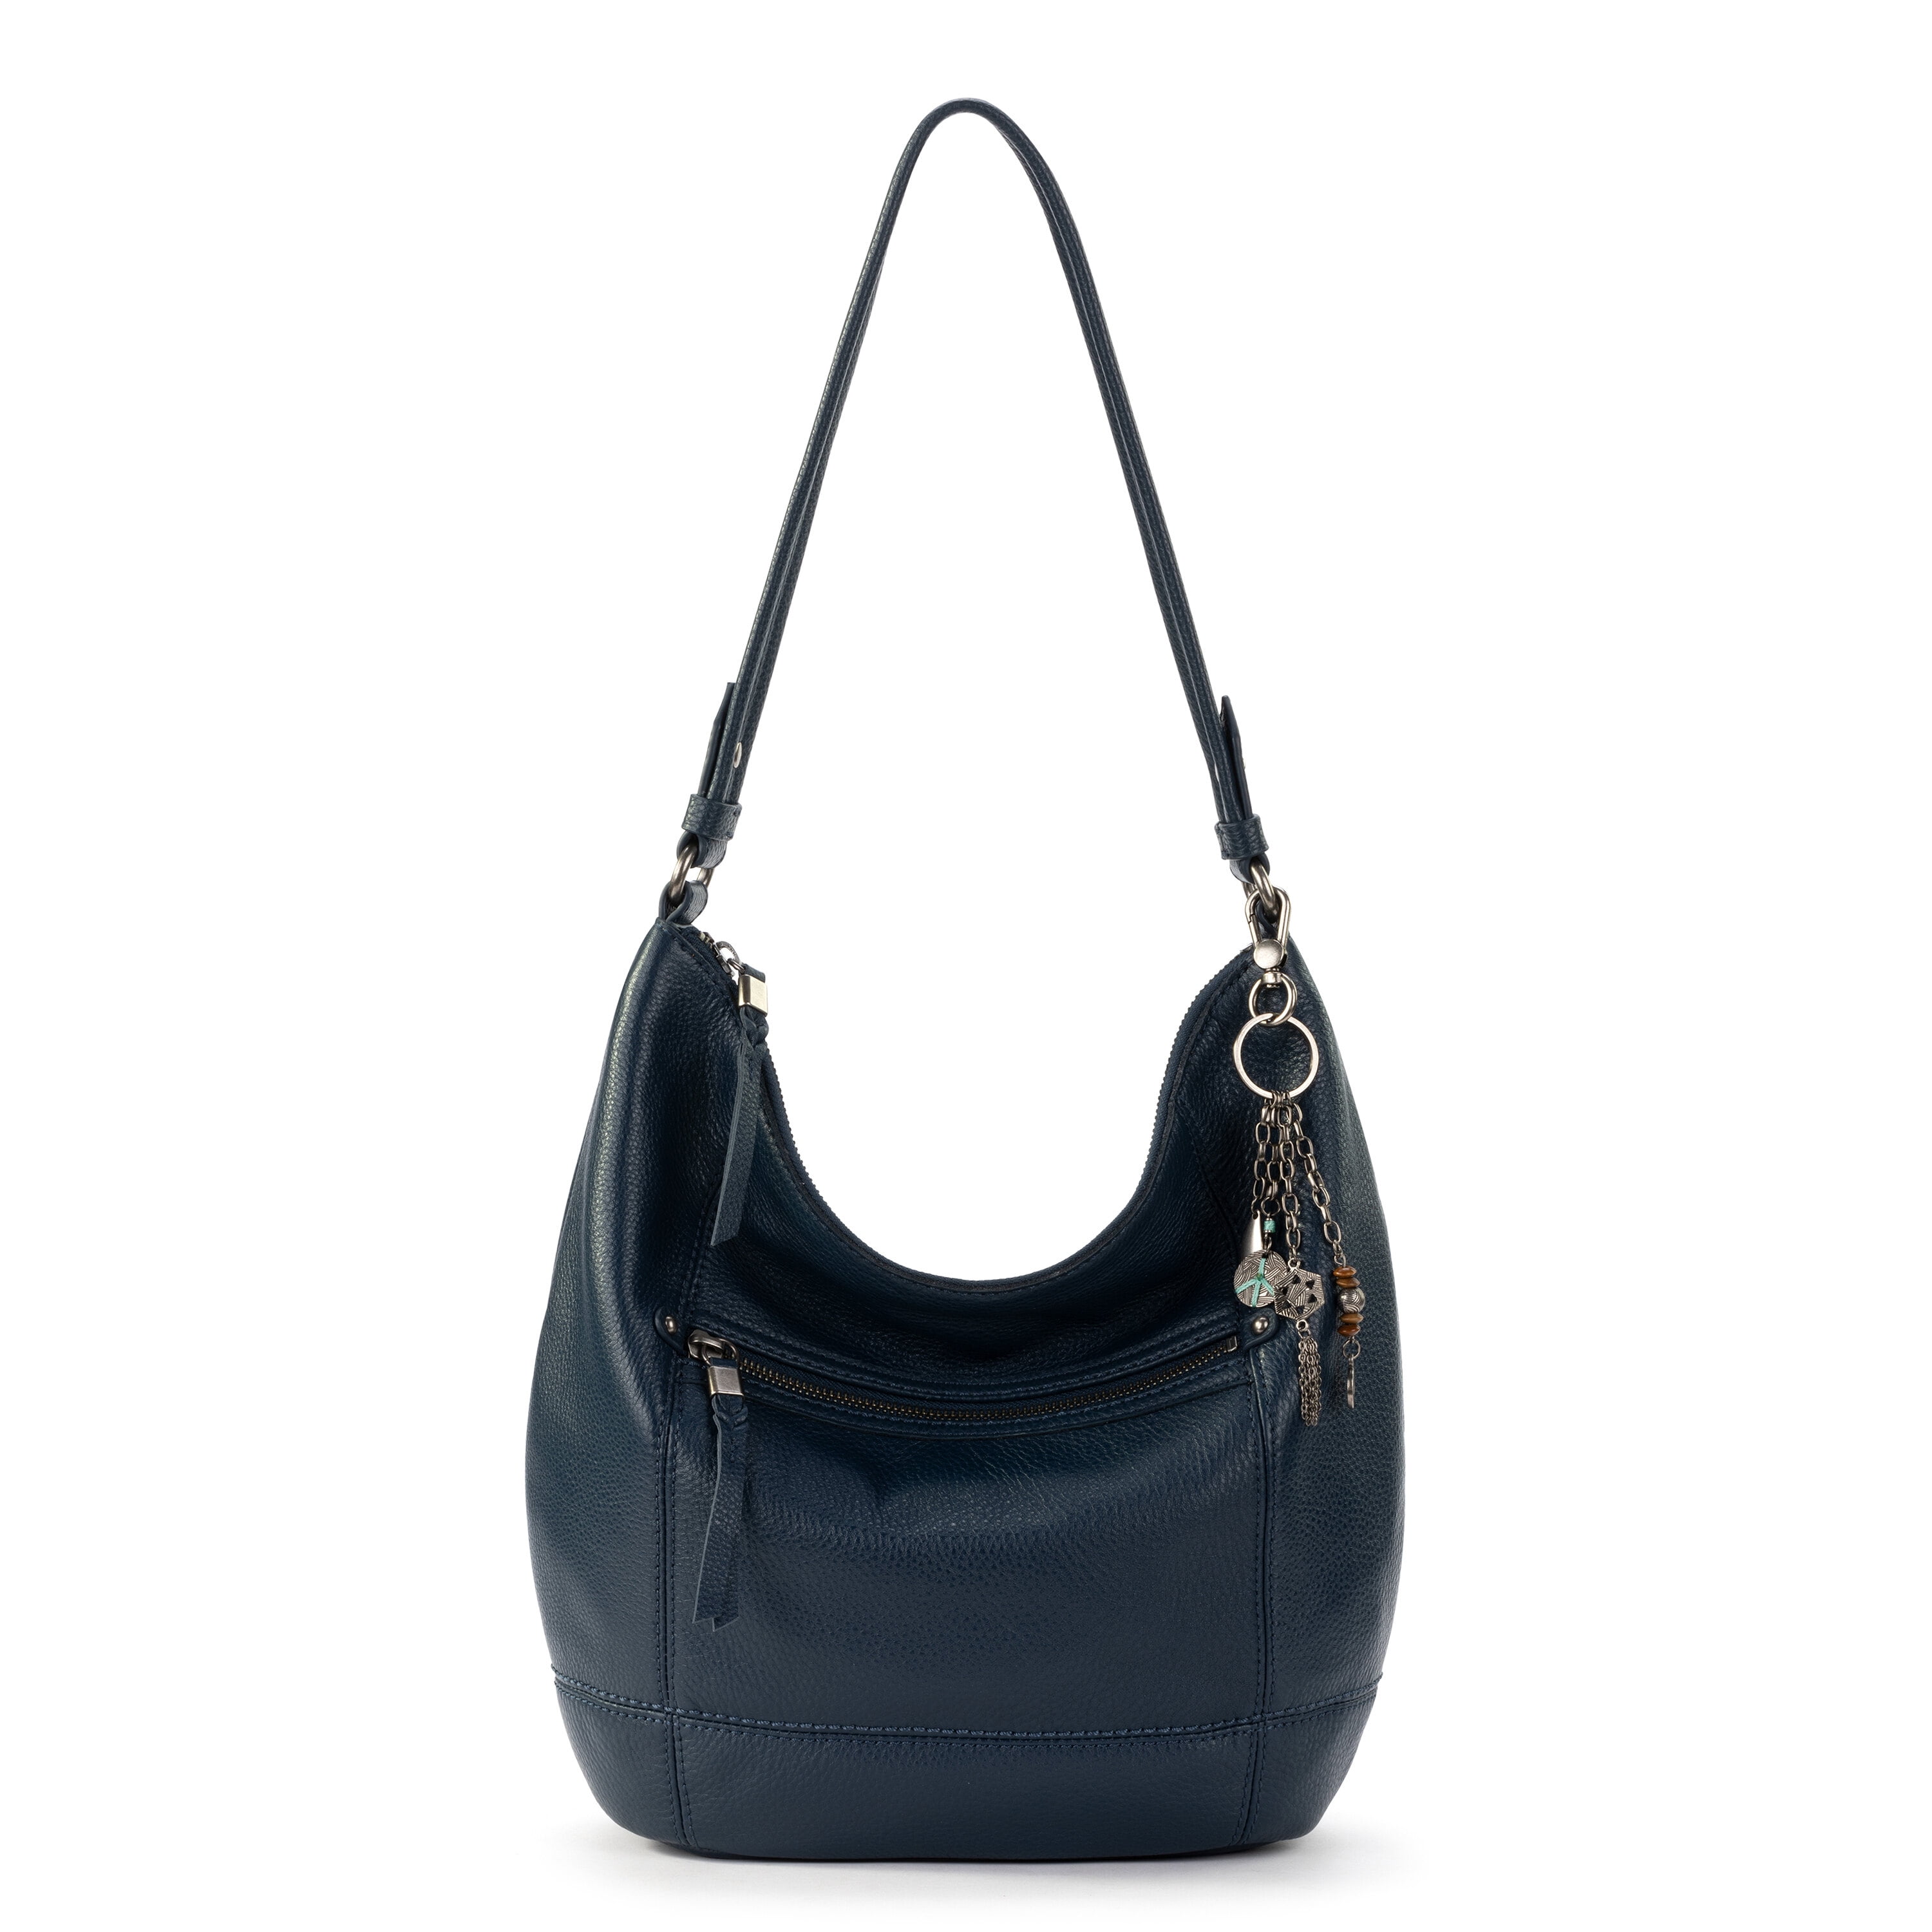 The Sak 100% Leather Solid Black Leather Shoulder Bag One Size - 47% off |  ThredUp